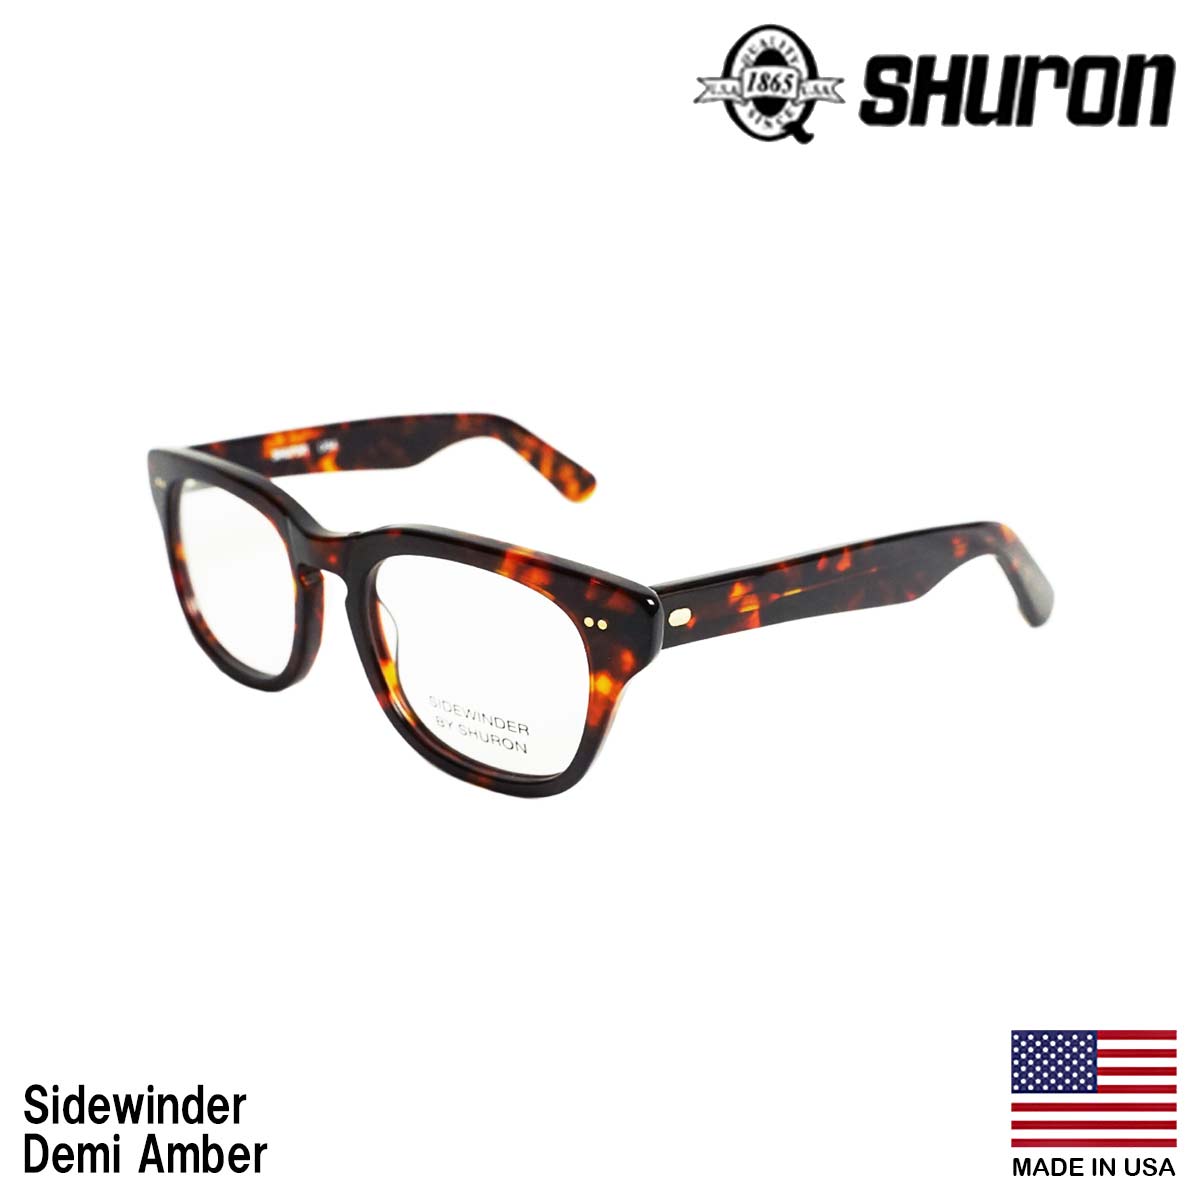 シュロン SHURON メガネ フレーム サイドワインダー 眼鏡 アメリカ製 米国製 ウエリントン セルフレーム エボニー デミアンバー